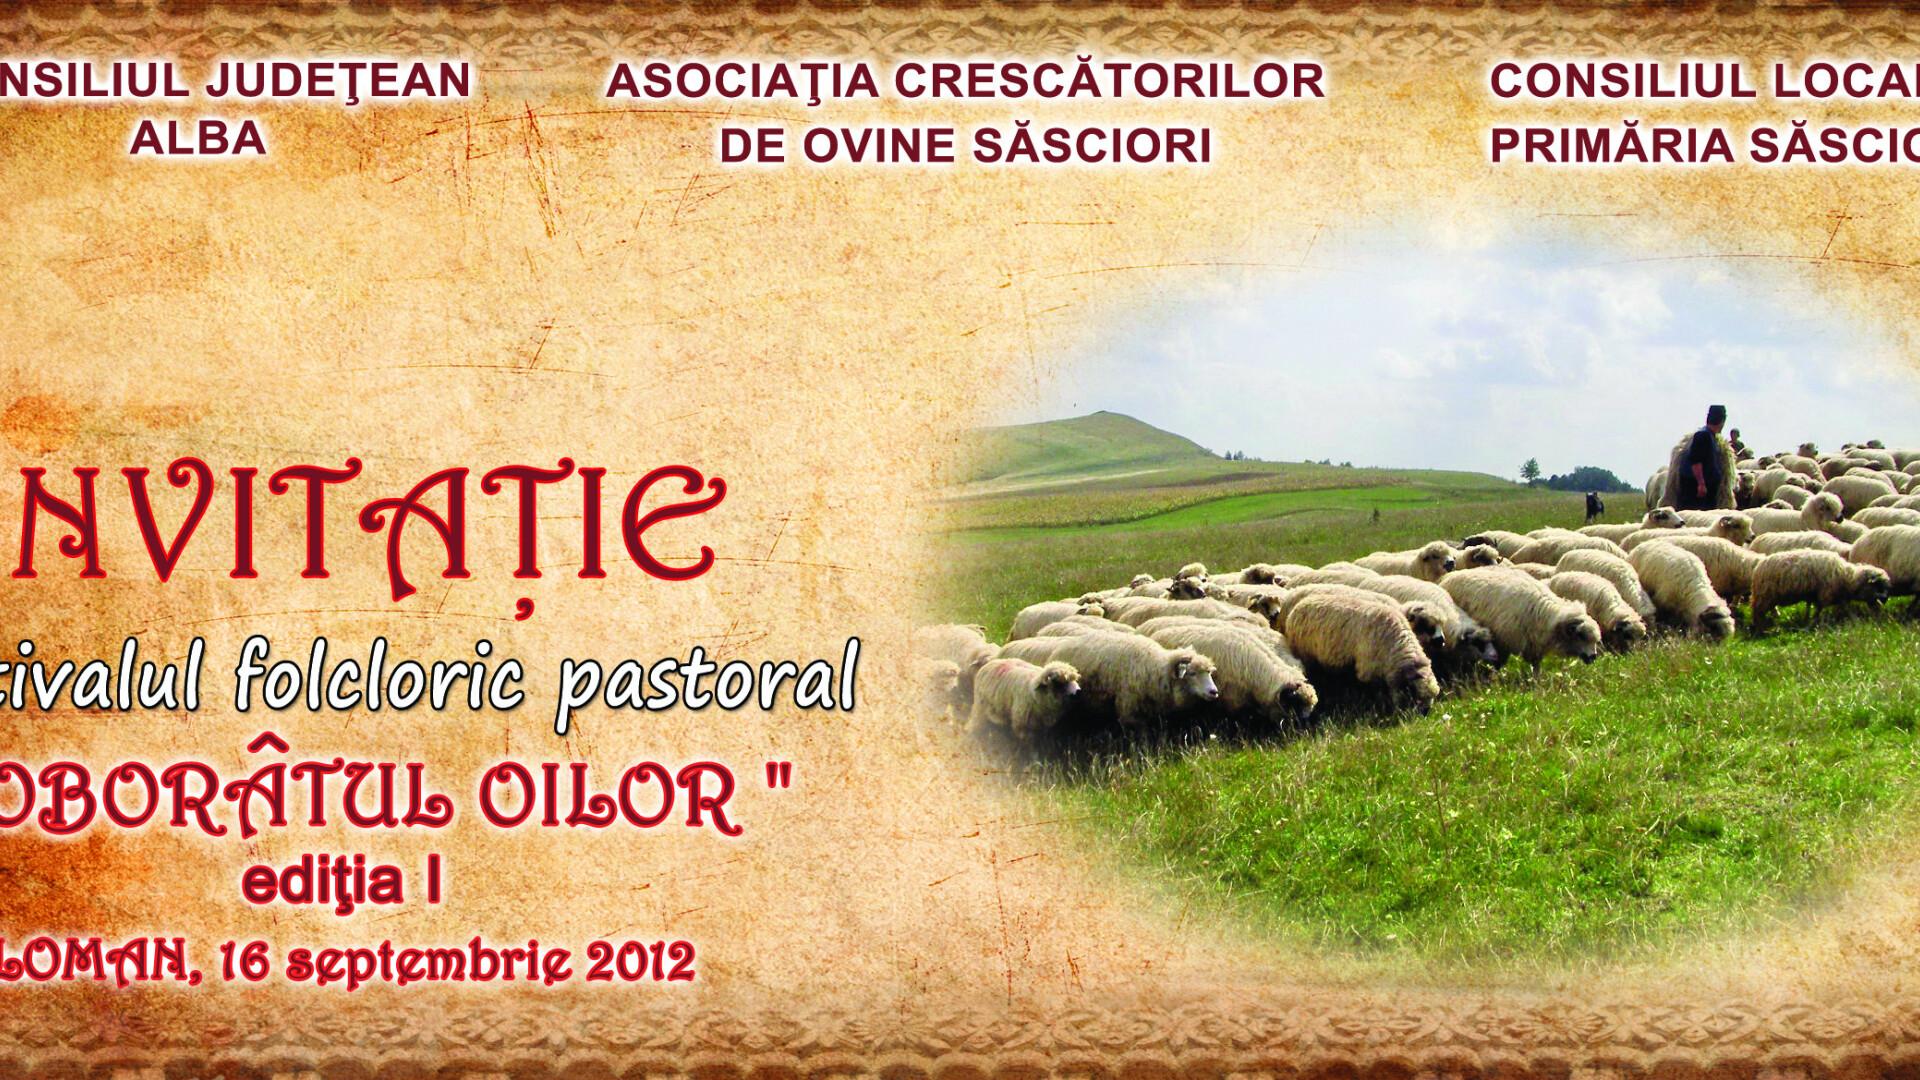 Pastorii din Alba isi coboara oile de la munte pentru iernat